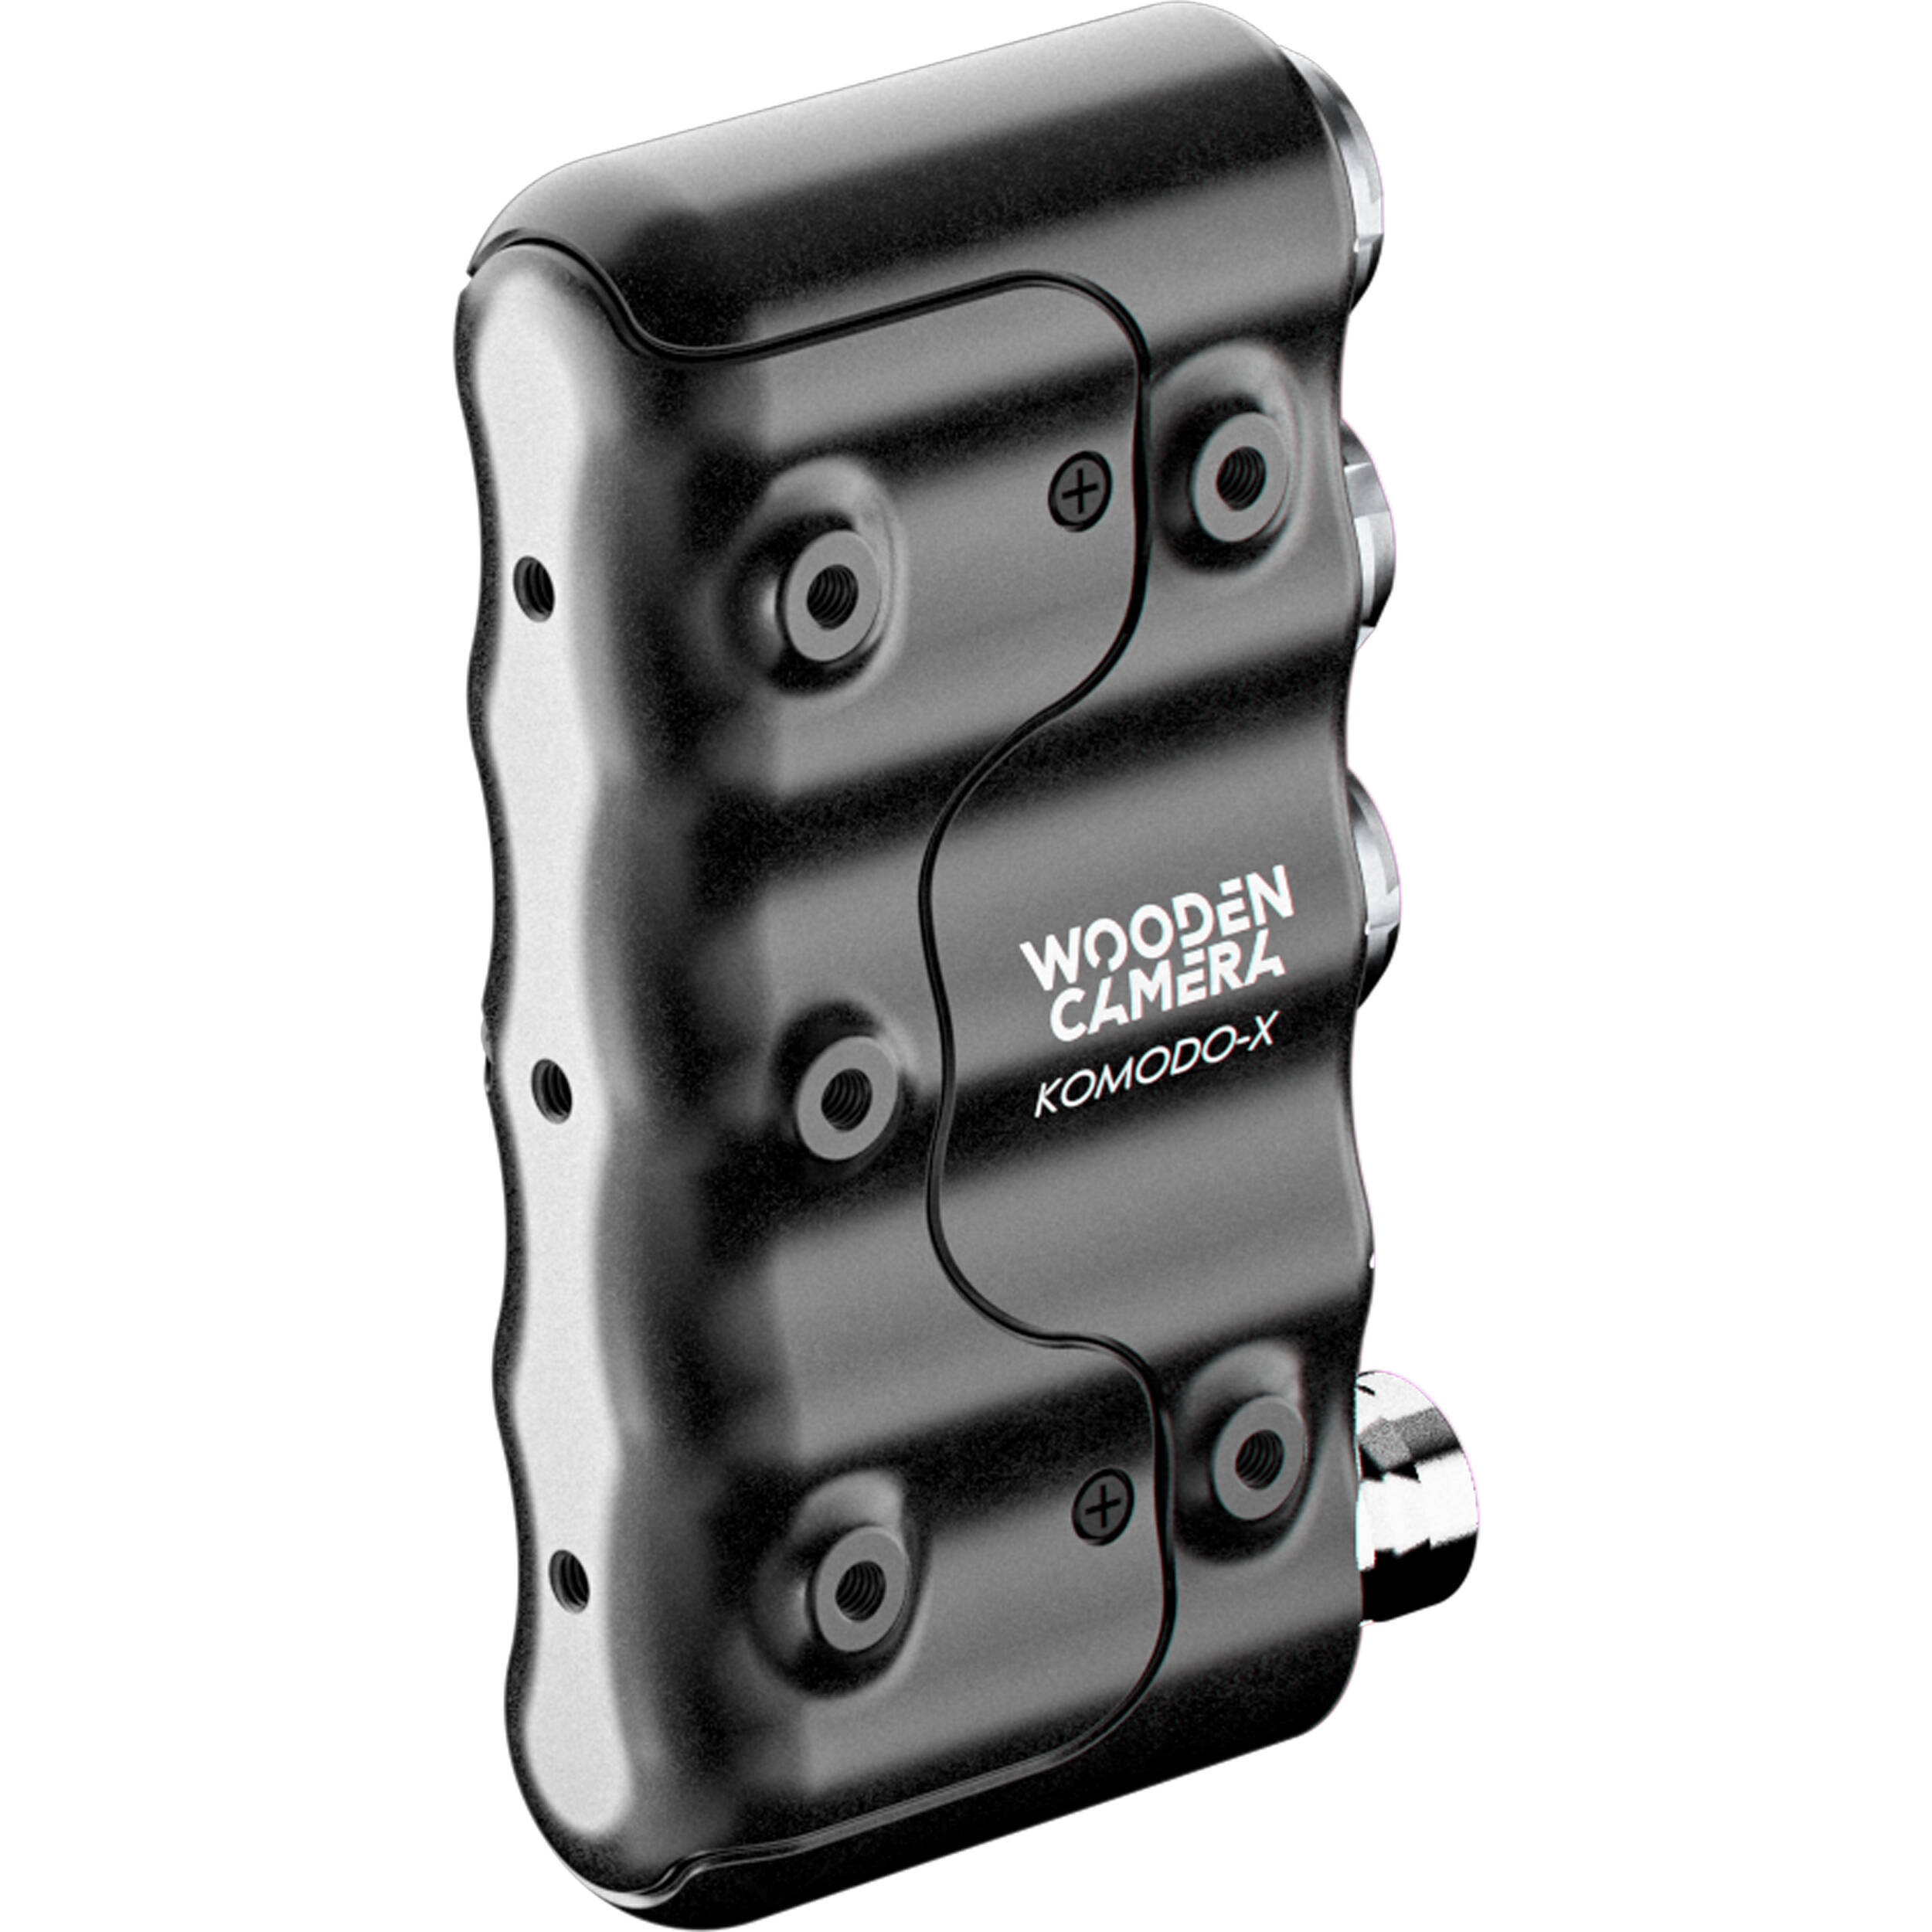 Wooden Camera B-Box Kit for RED KOMODO, KOMODO-X & V-RAPTOR